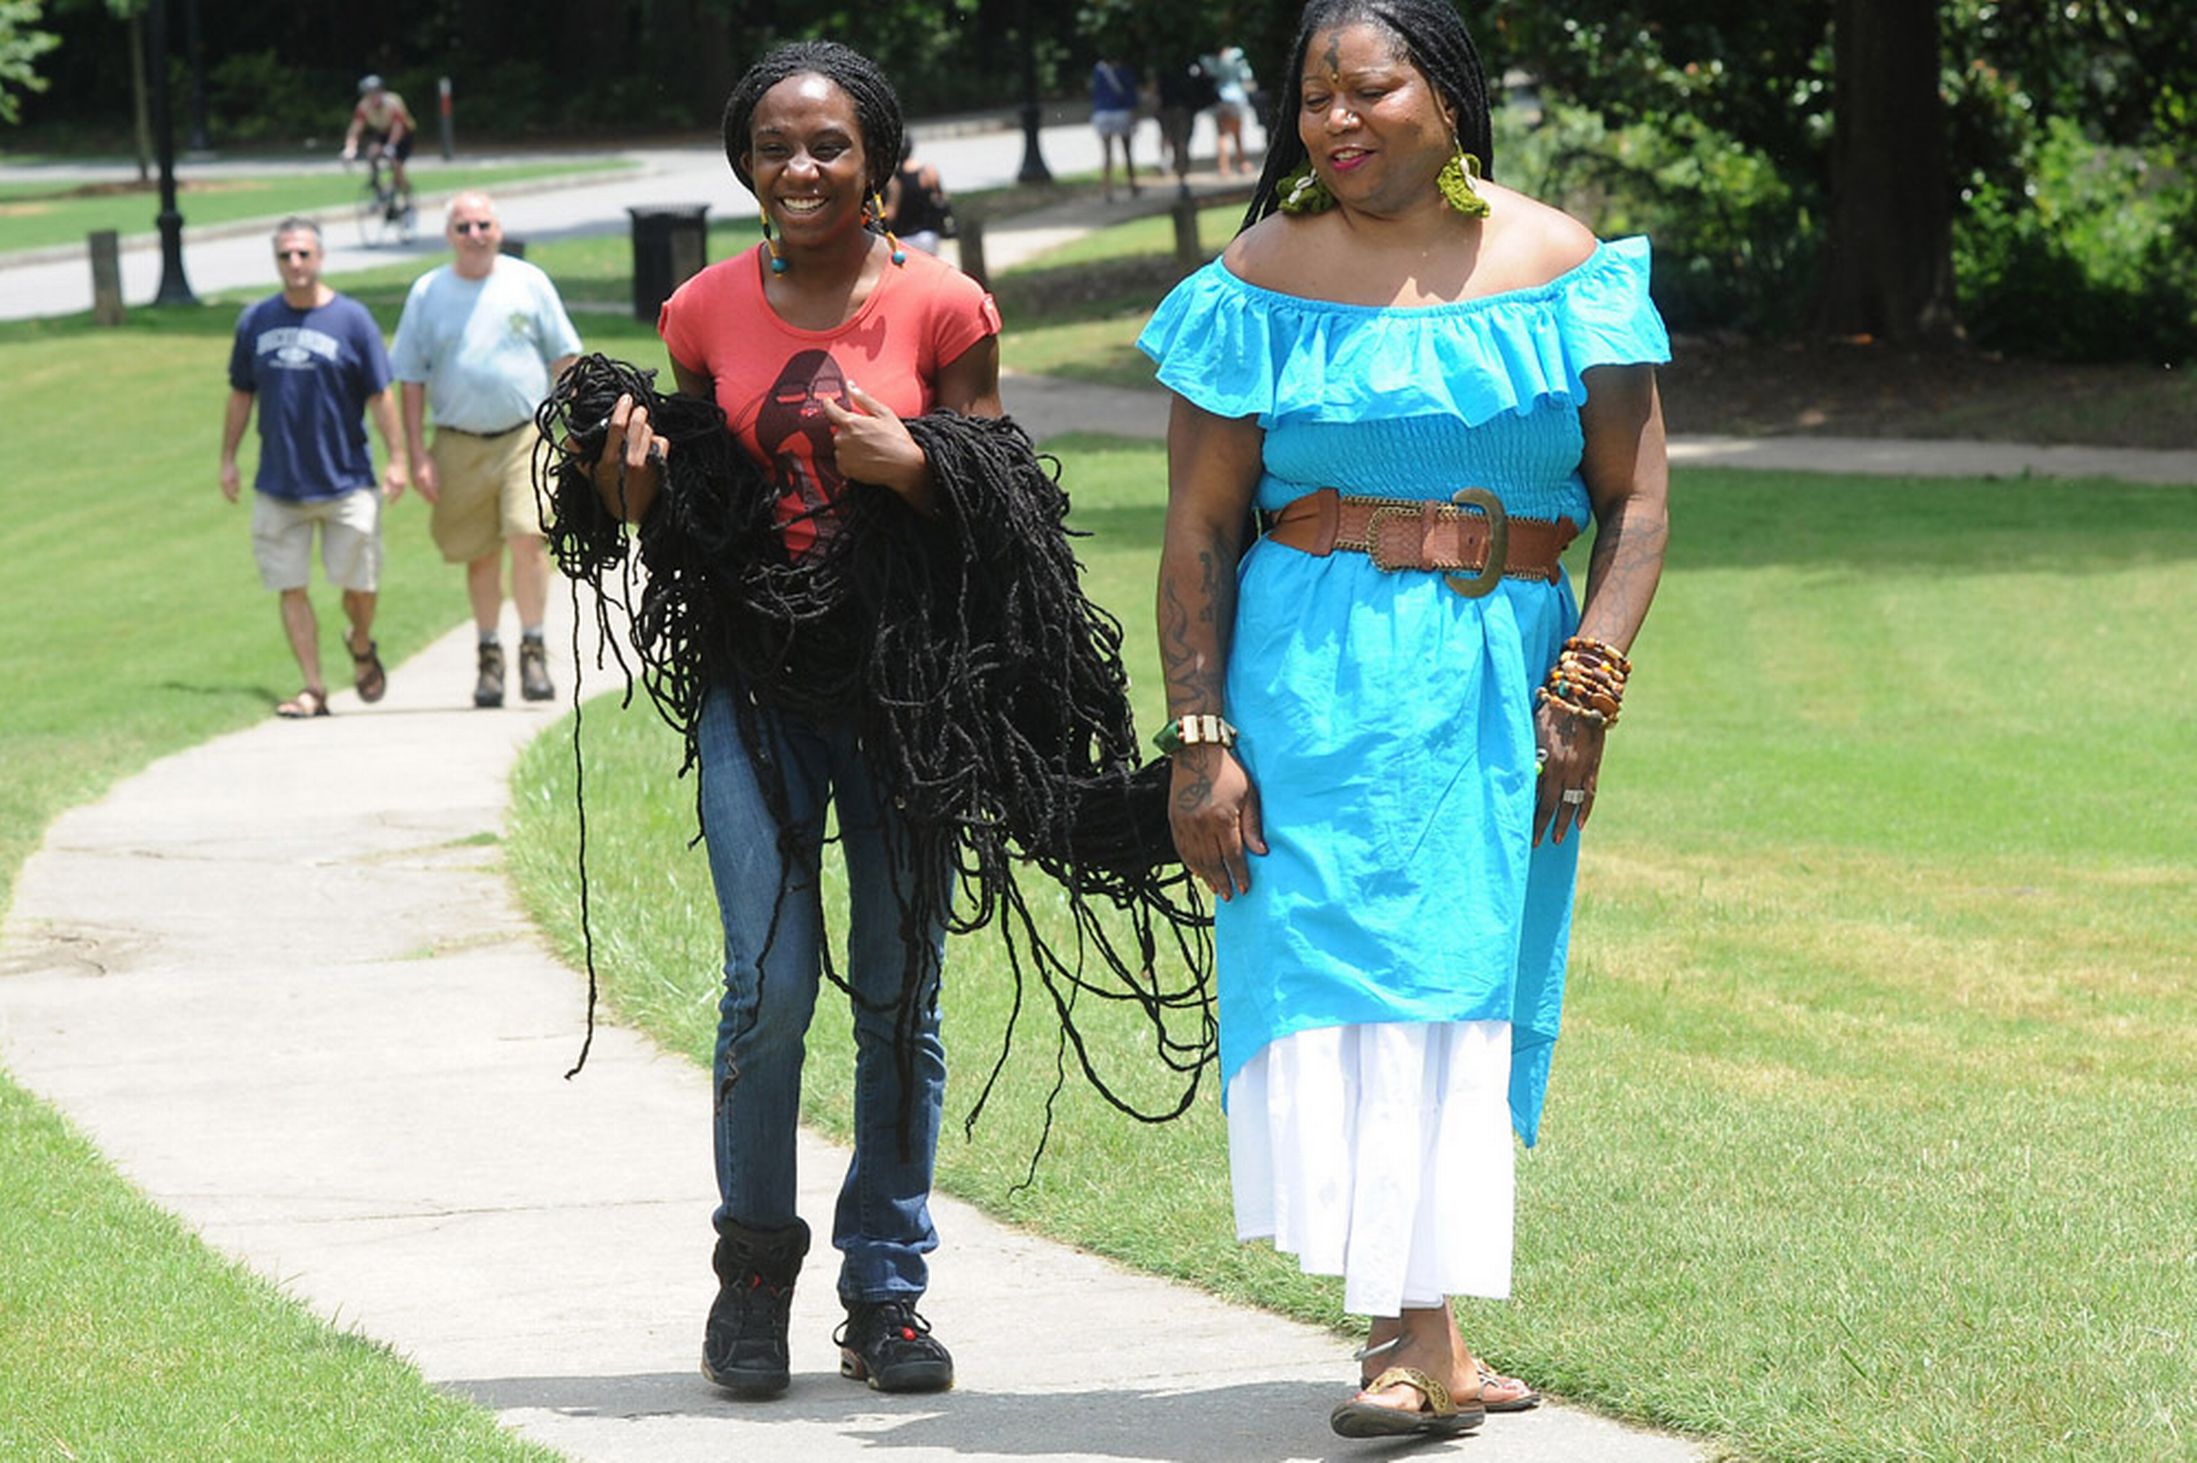 Самая длинная. Аша Зулу Мандела. Аша Мандела черная Рапунцель. Аша Мандела женщина с самыми длинными волосами. Самая длинная прическа в мире.